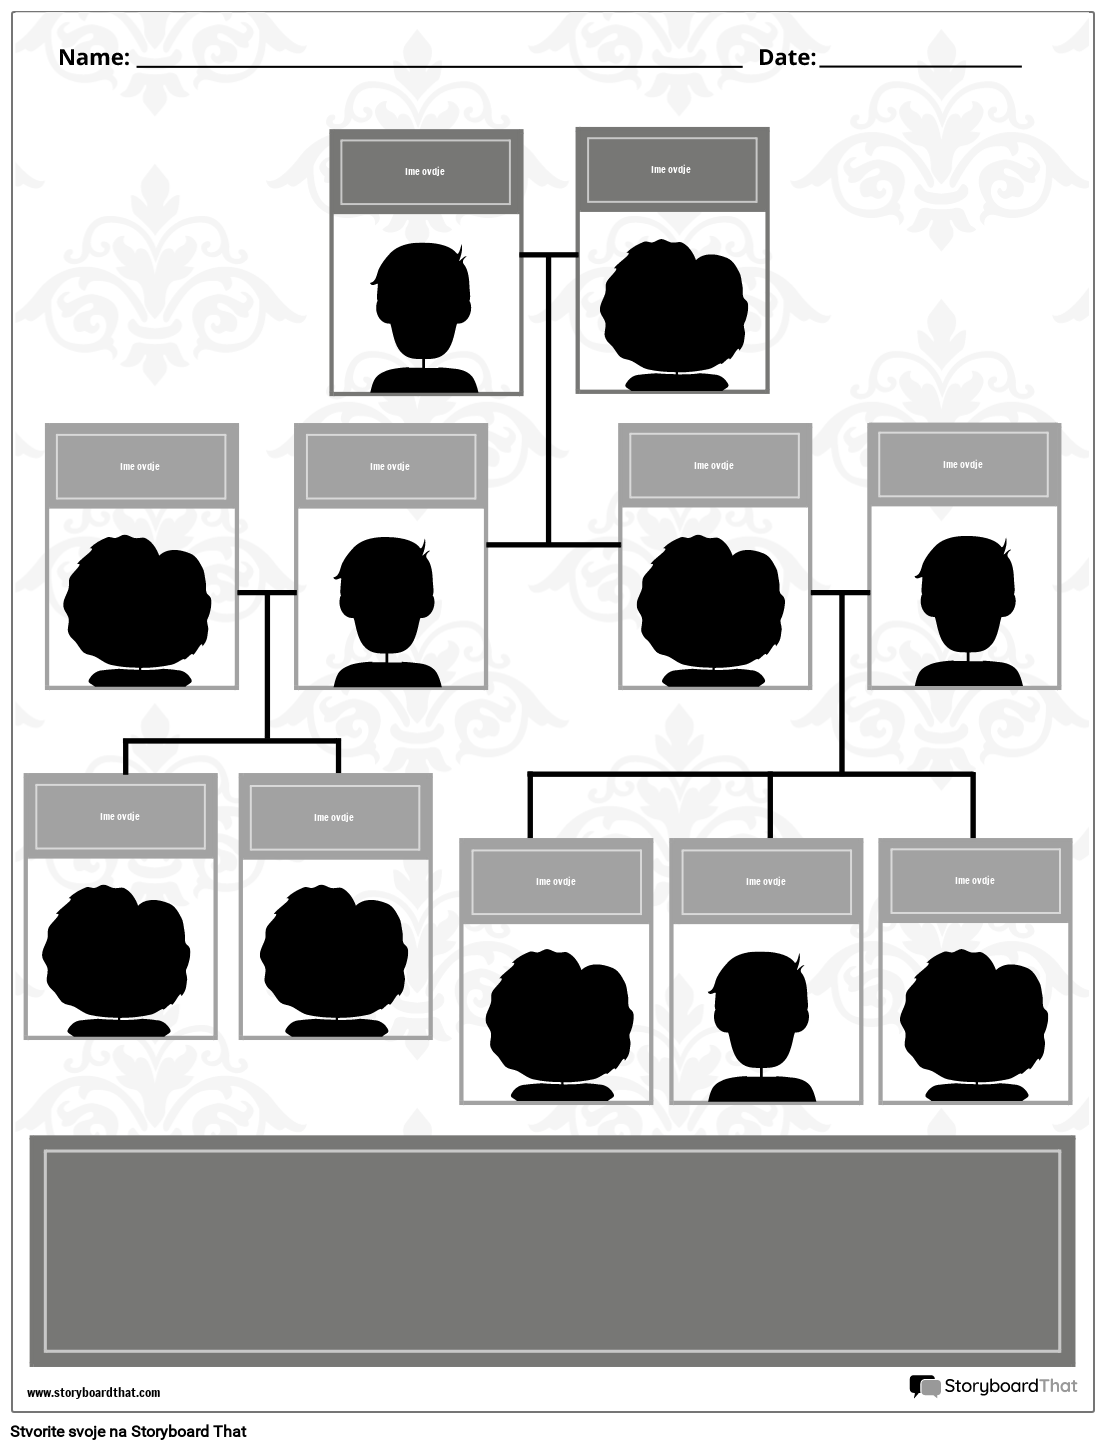 Novi ED Predložak obiteljskog stabla 2 (crno-bijelo)